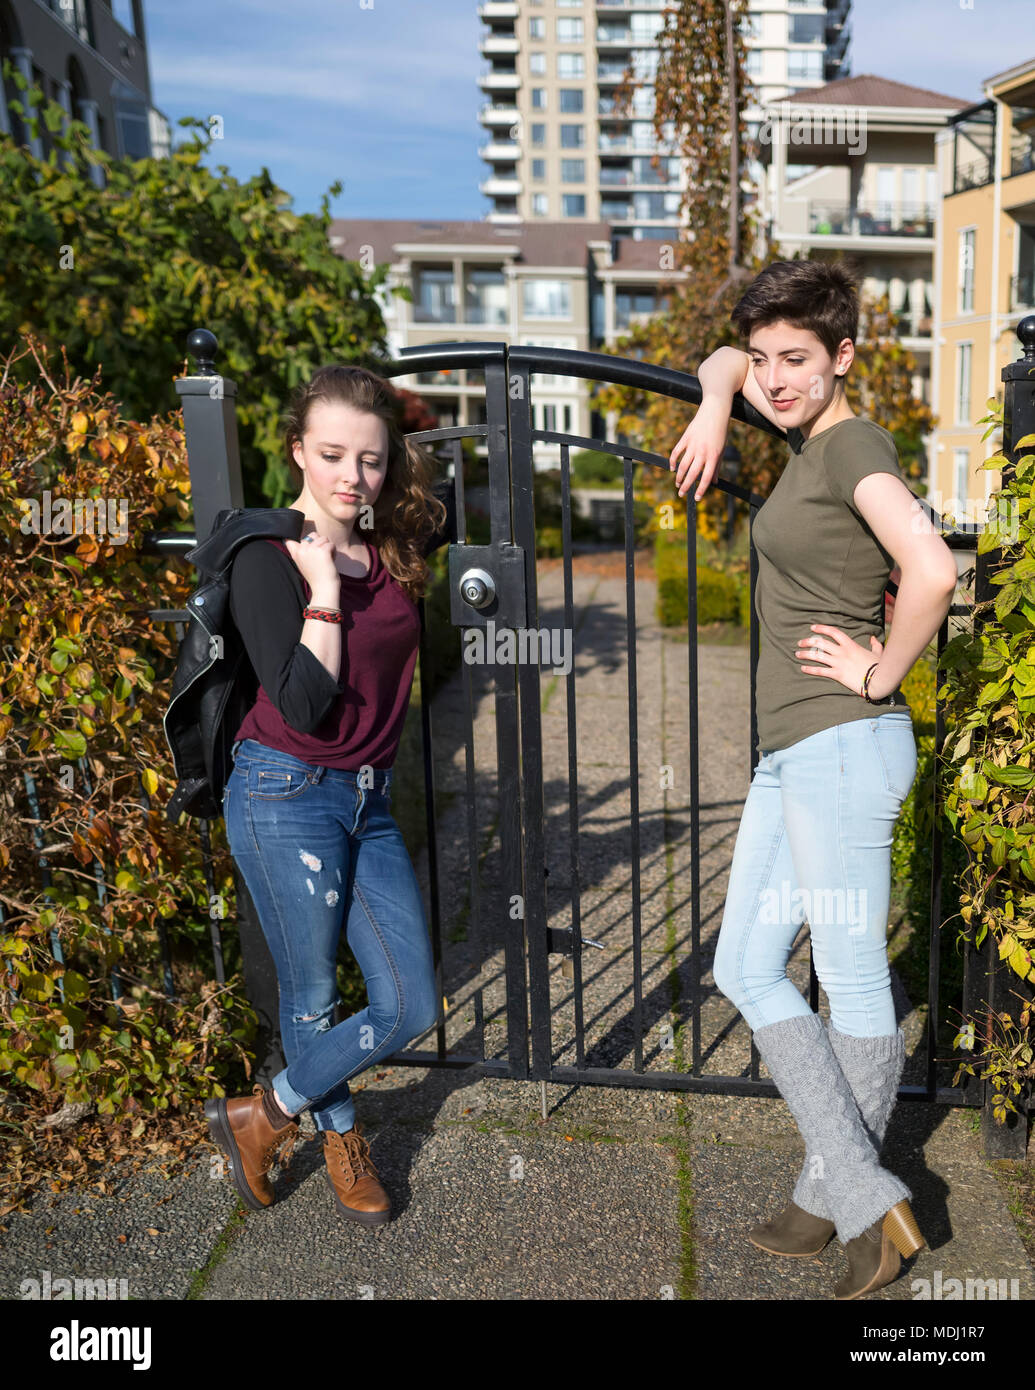 Deux jeunes femmes se tenir appuyé contre une barrière métallique à la cool et confiant avec le logement dans l'arrière-plan Banque D'Images